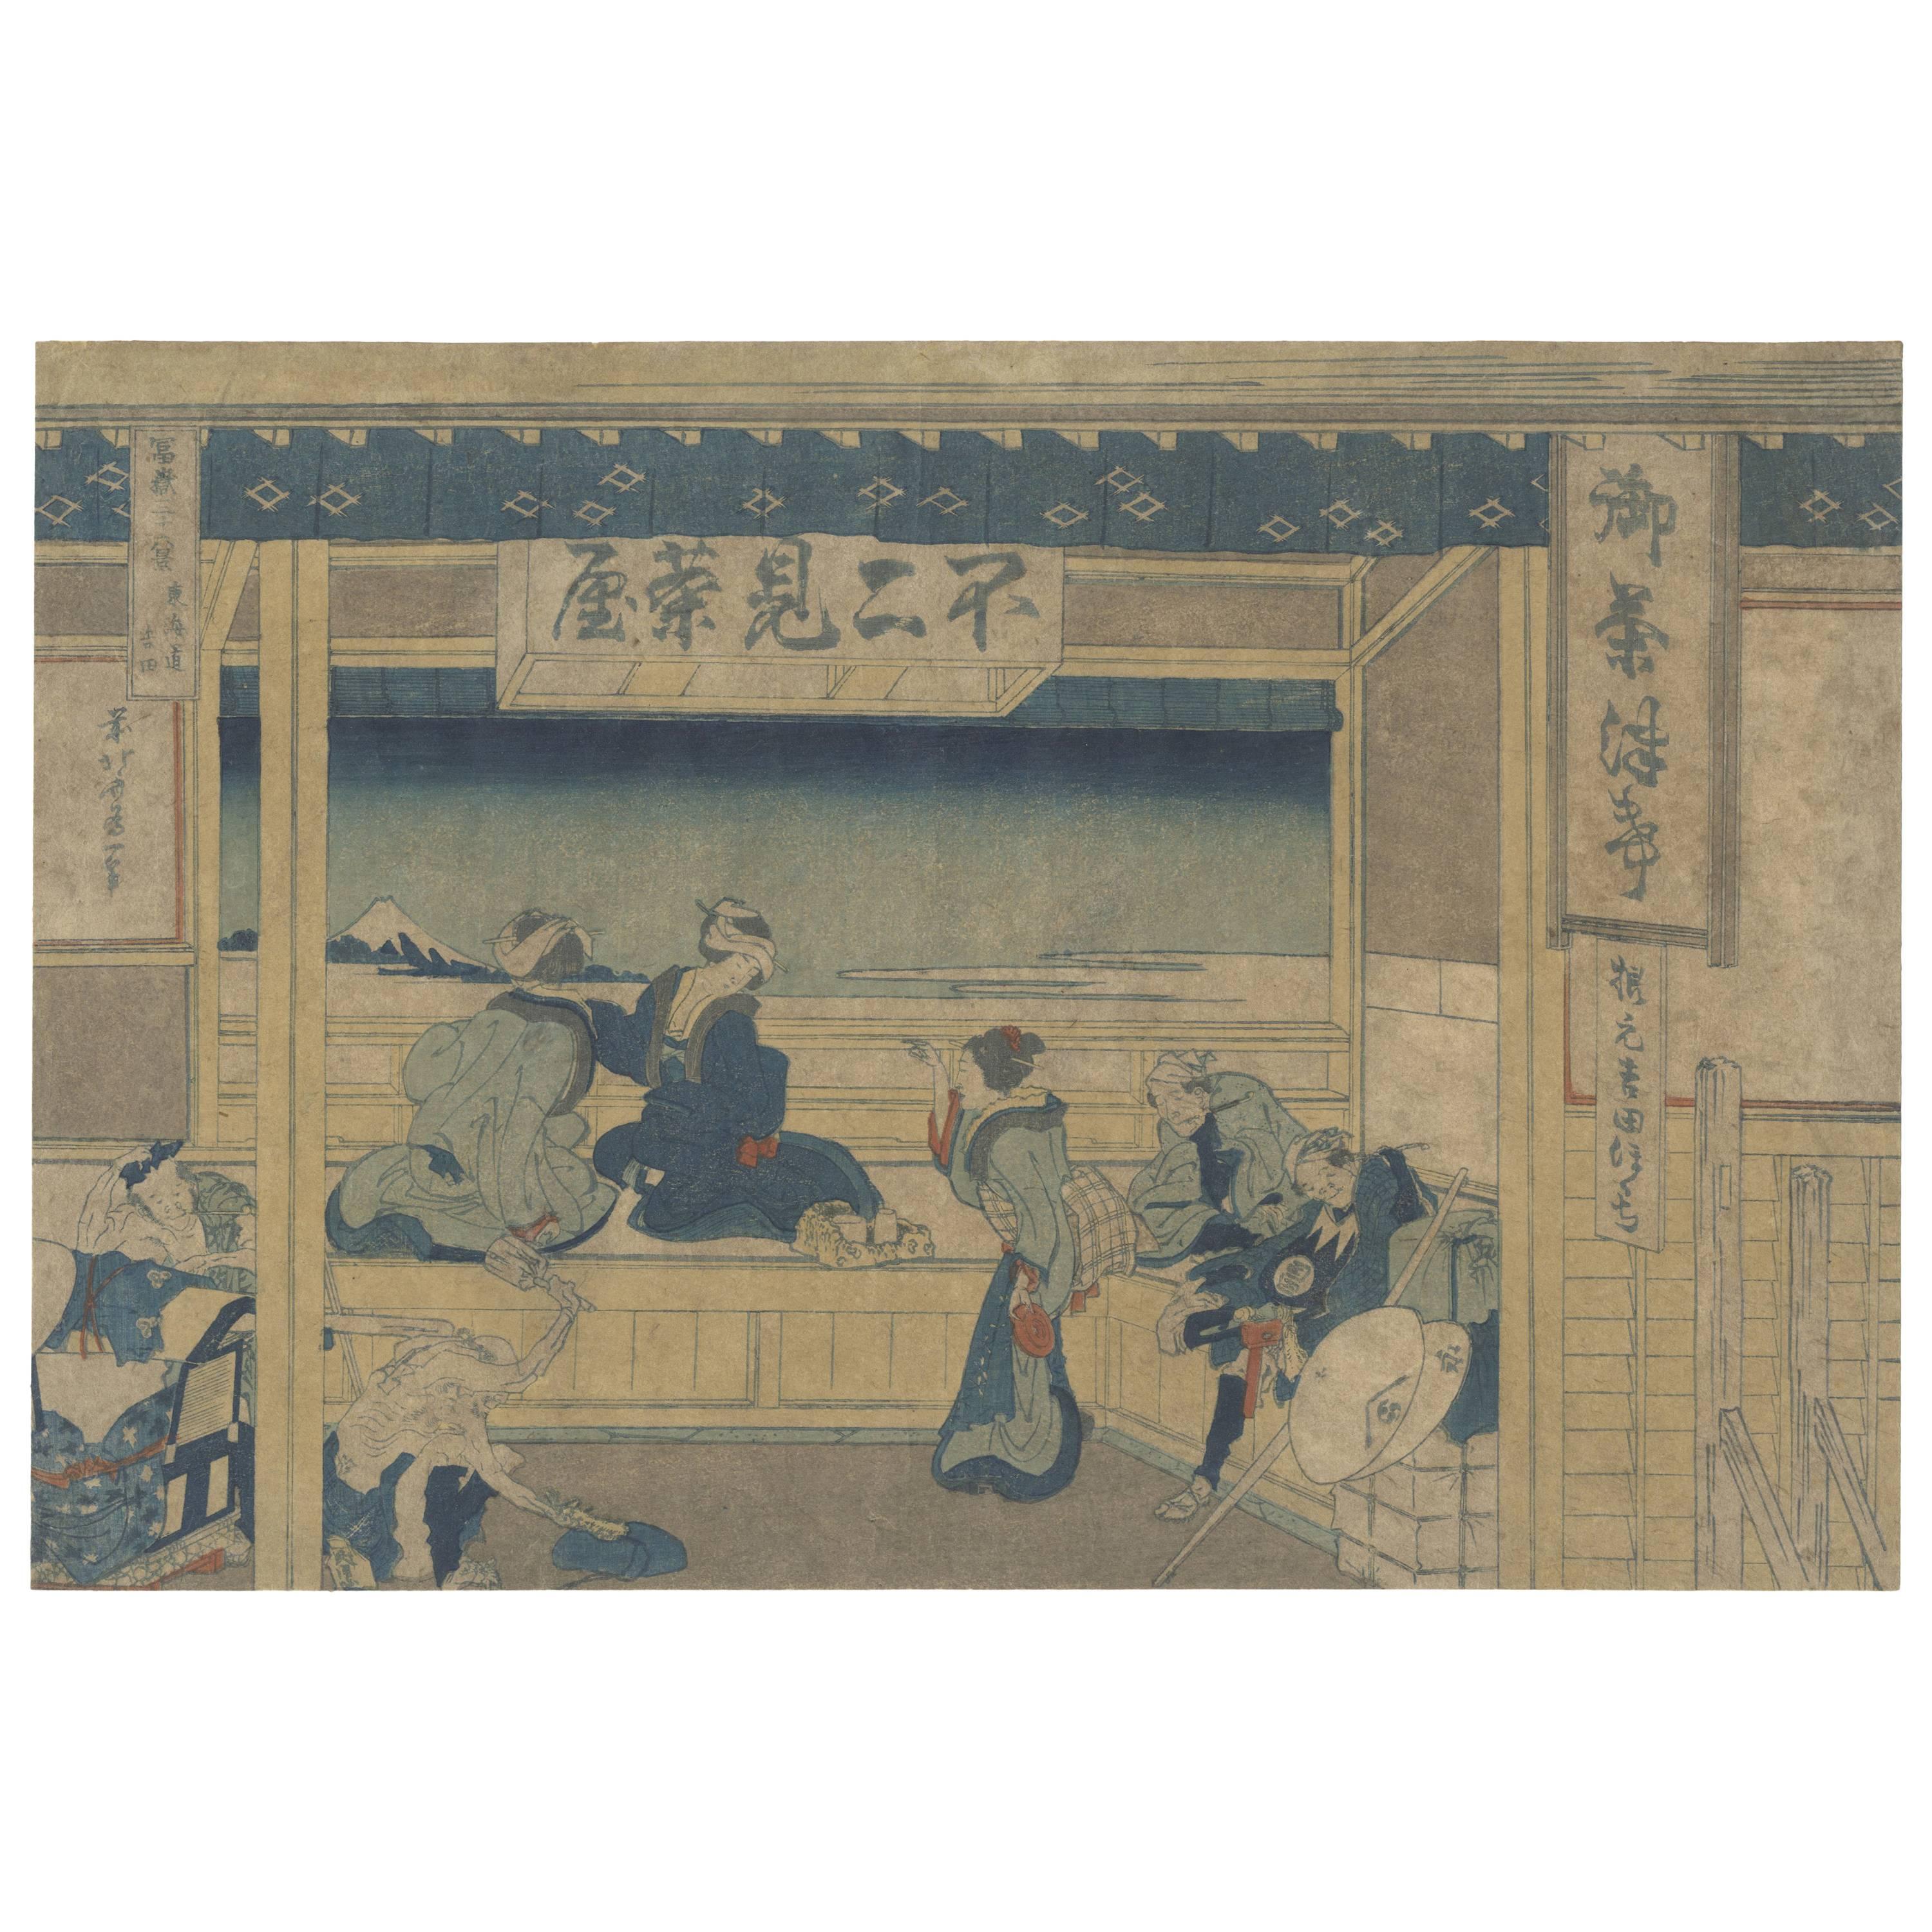 Hokusai, 36 Views of Mount Fuji, Yoshida, Tokaido, 19th Century Woodblock Print For Sale